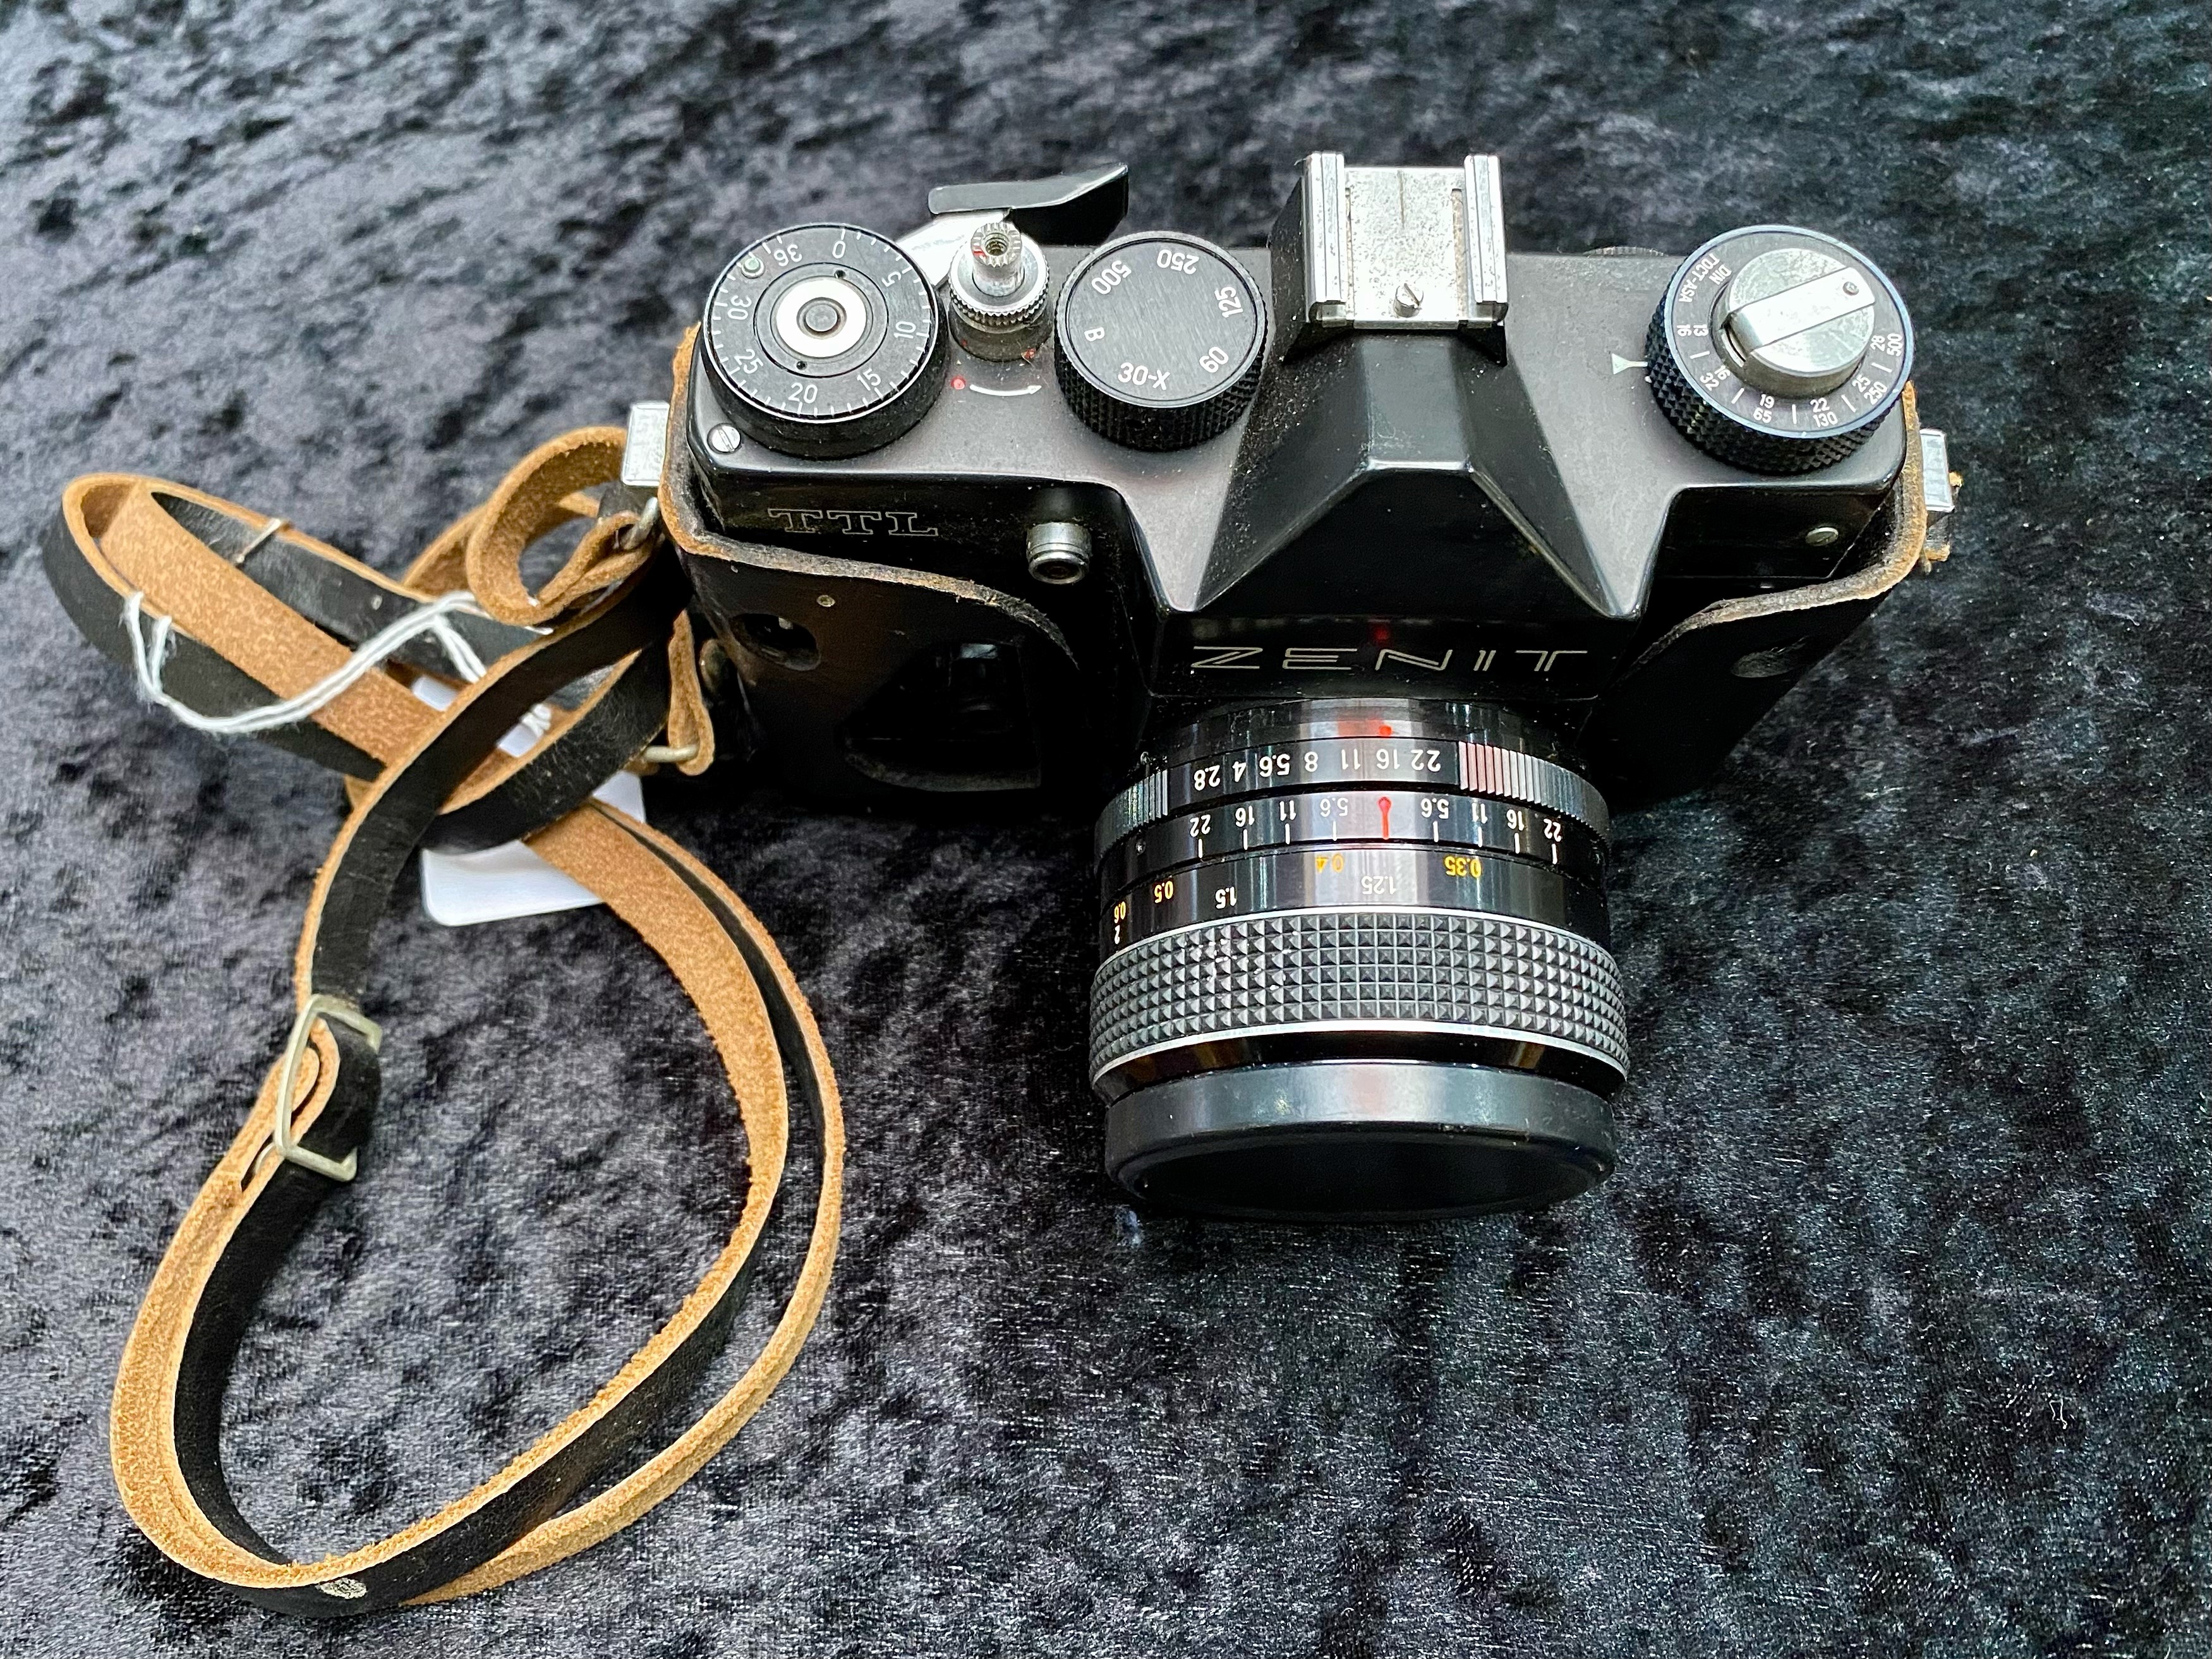 Vintage Zenit TTL Camera in leather case - Image 3 of 3